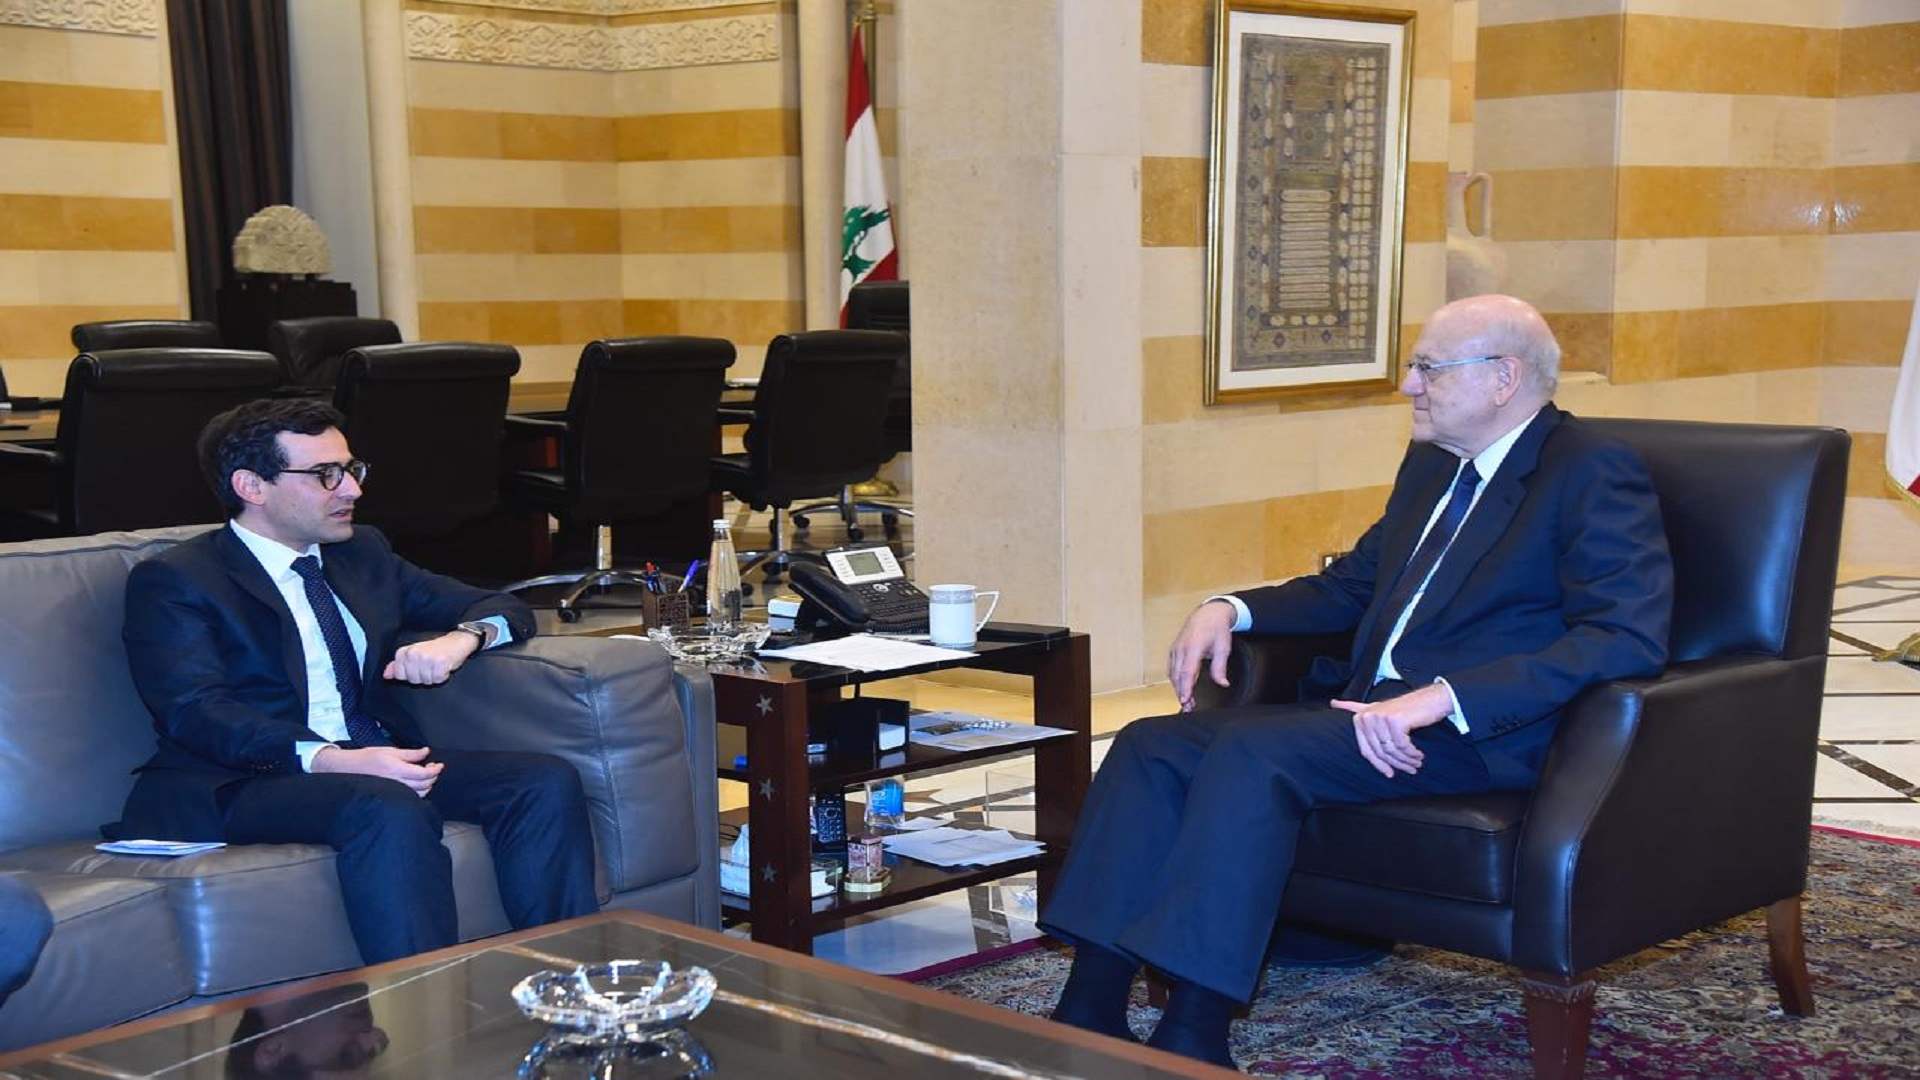 وزير خارجية فرنسا من السراي: انتخاب رئيس جديد مسألة أساسية لمواكبة الاستحقاقات الكبيرة التي يشهدها لبنان والمنطقة